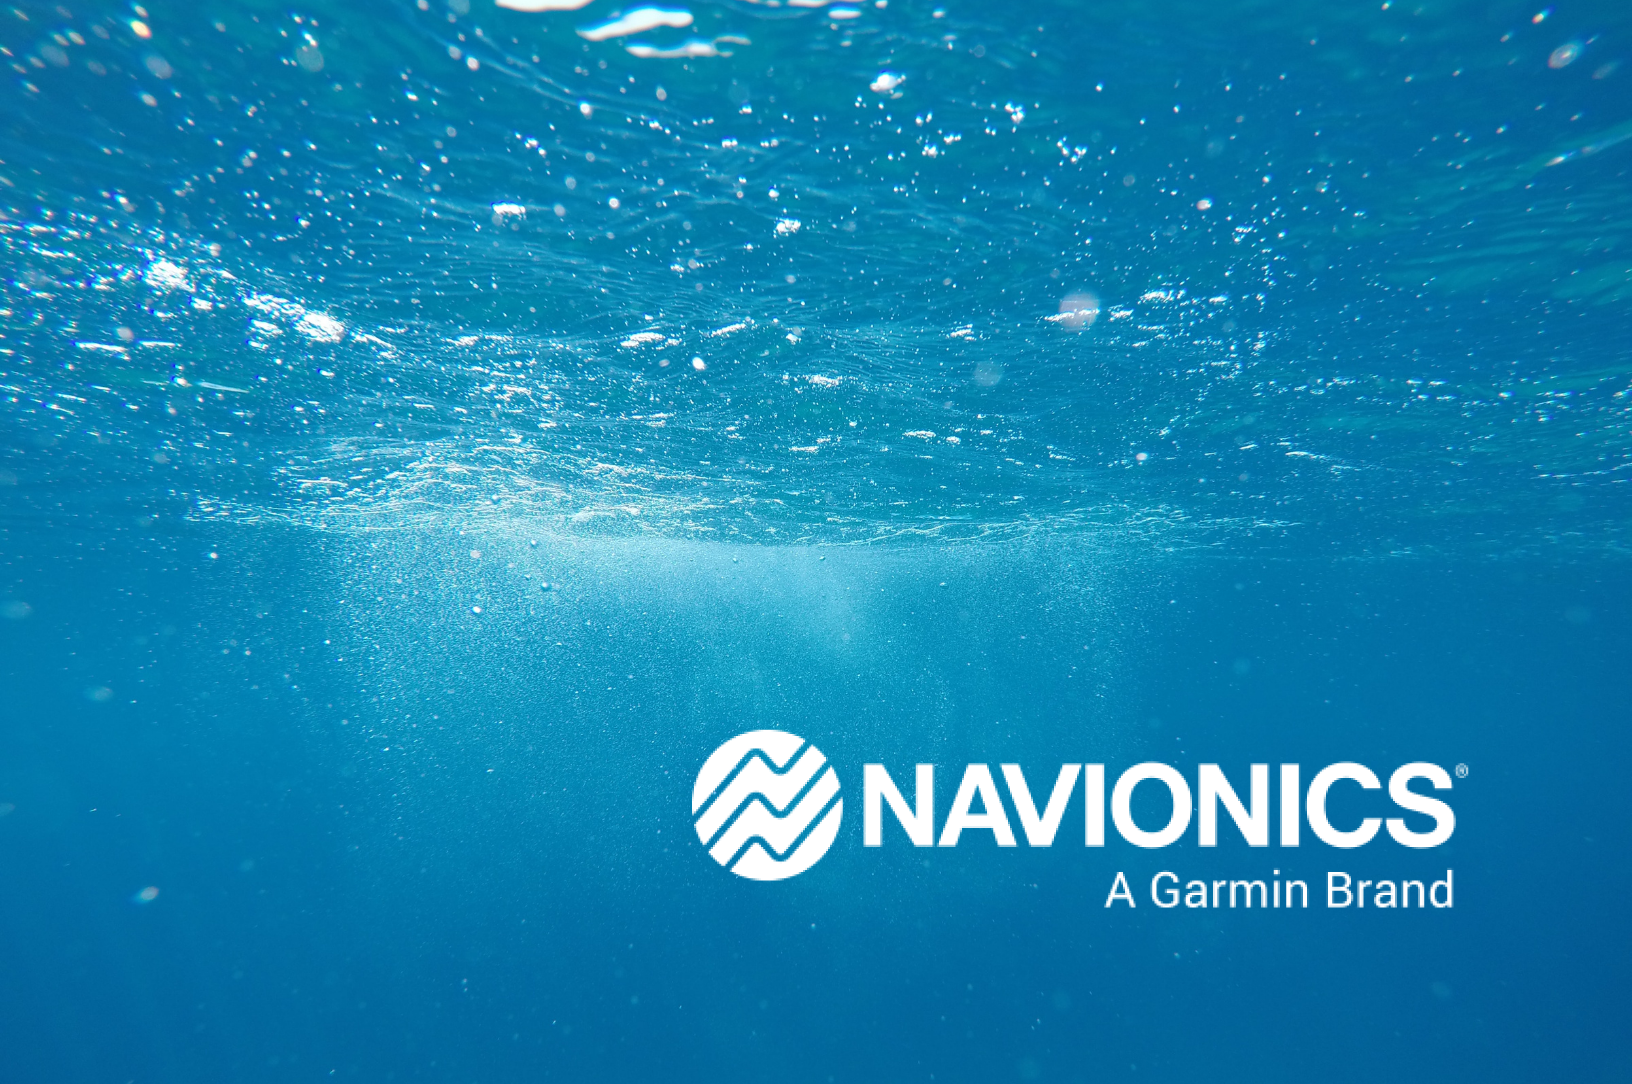 Navionics Products